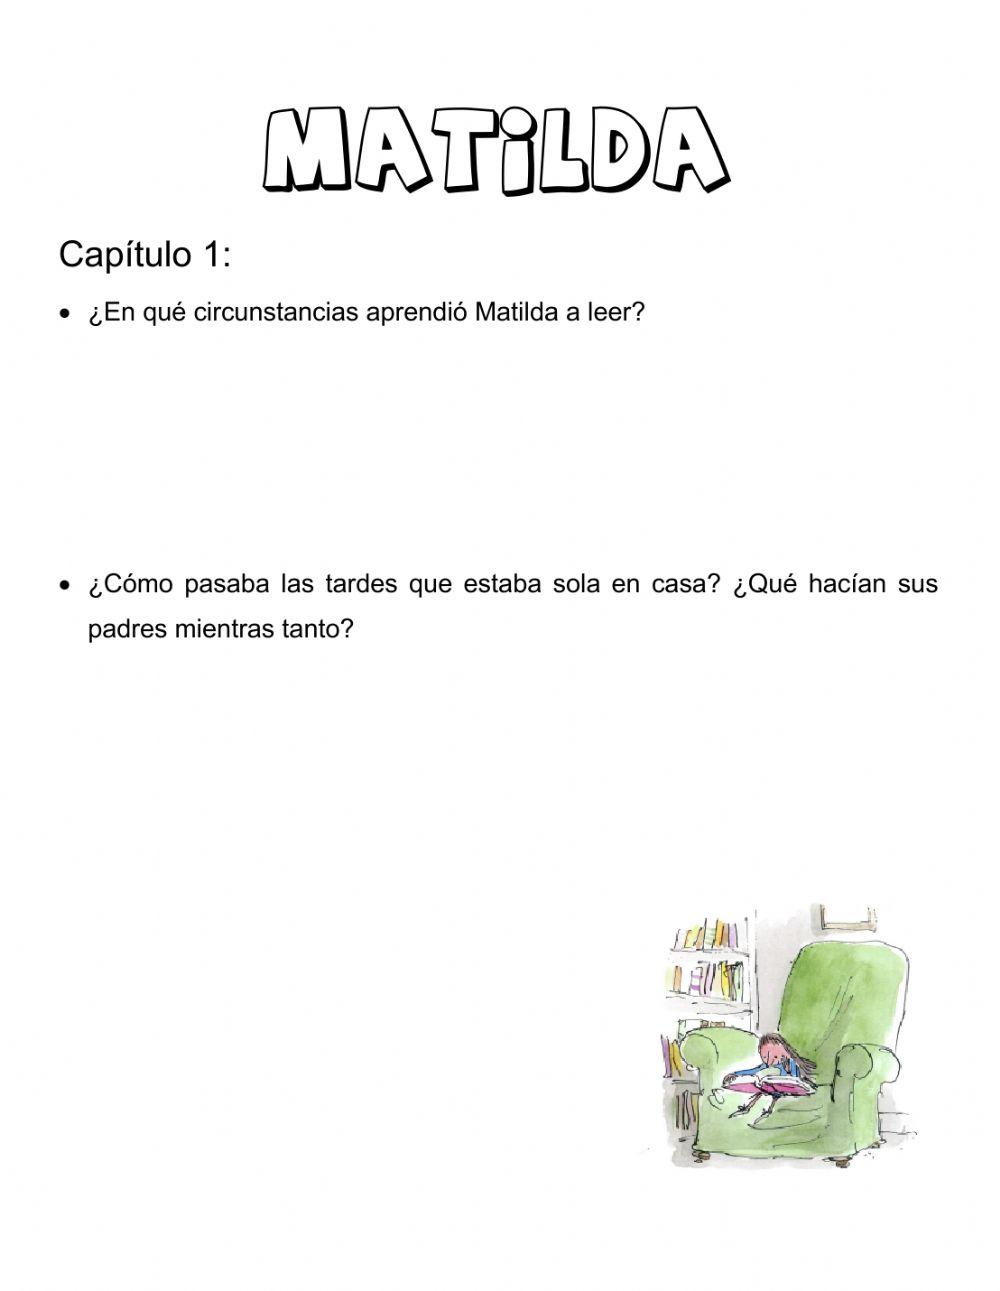 Matilda Capítulo 1